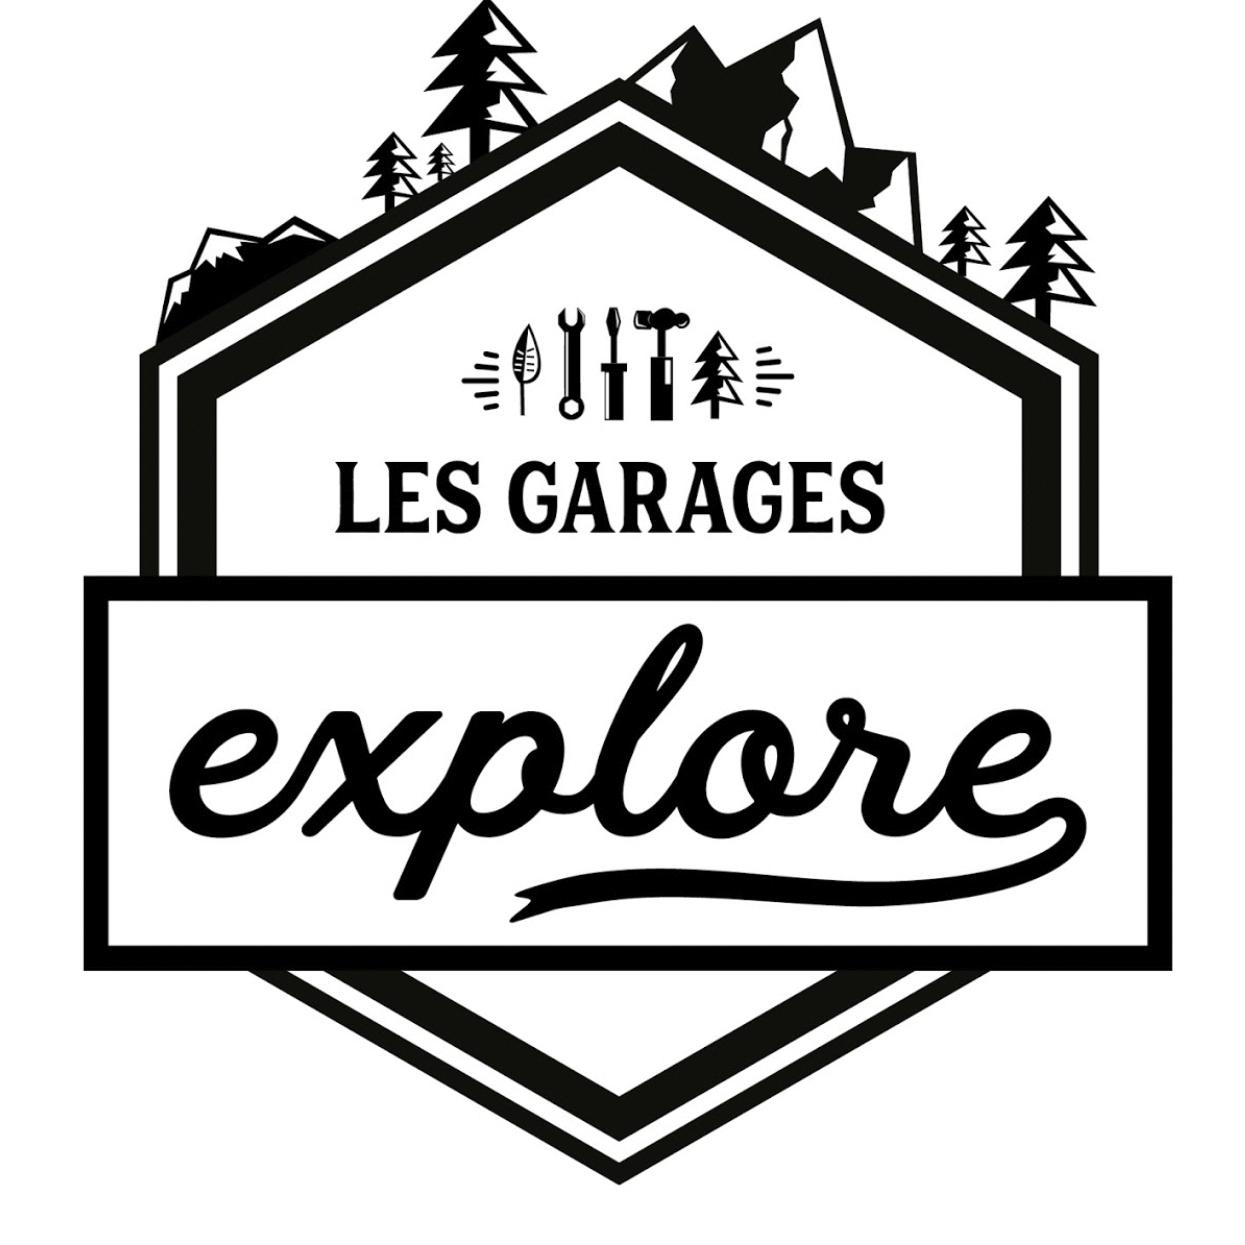 Les Garages Explore - Lawn Mowers